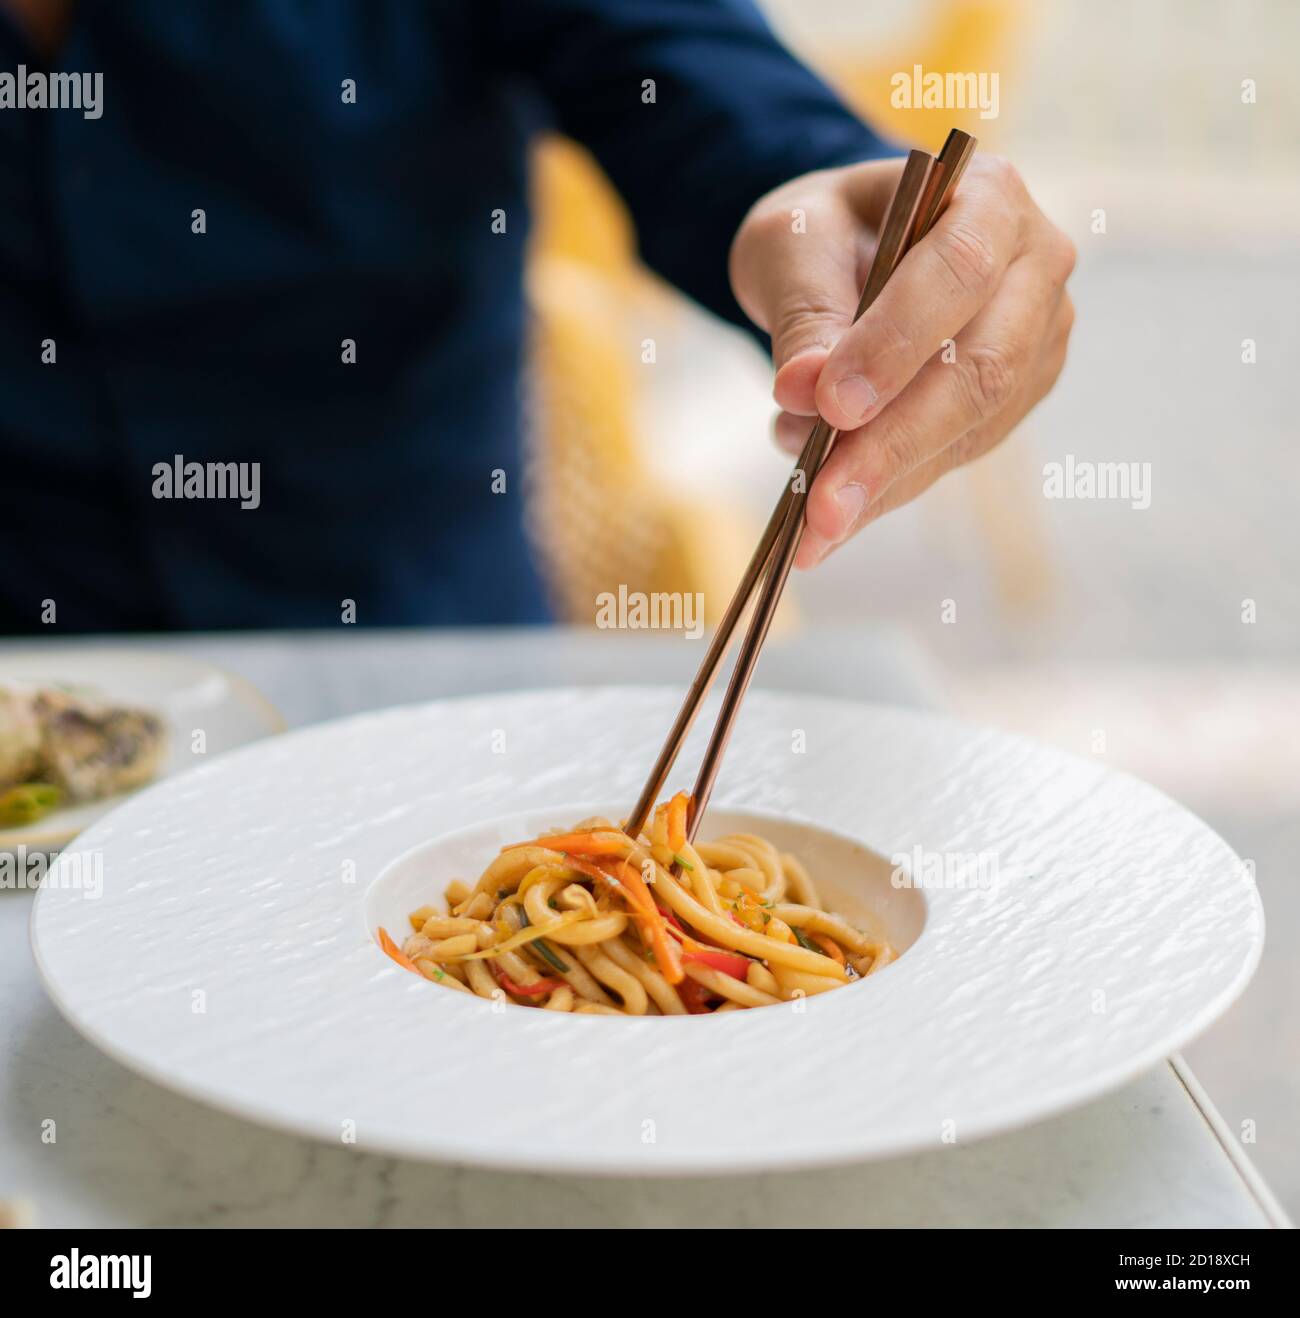 Mann essen asiatische vegetarische Lebensmittel udon Nudeln mit Baby bok Choy, Shiitake Pilze, Sesam und Pfeffer Nahaufnahme auf einem weißen Teller auf dem Tisch. Front vie Stockfoto